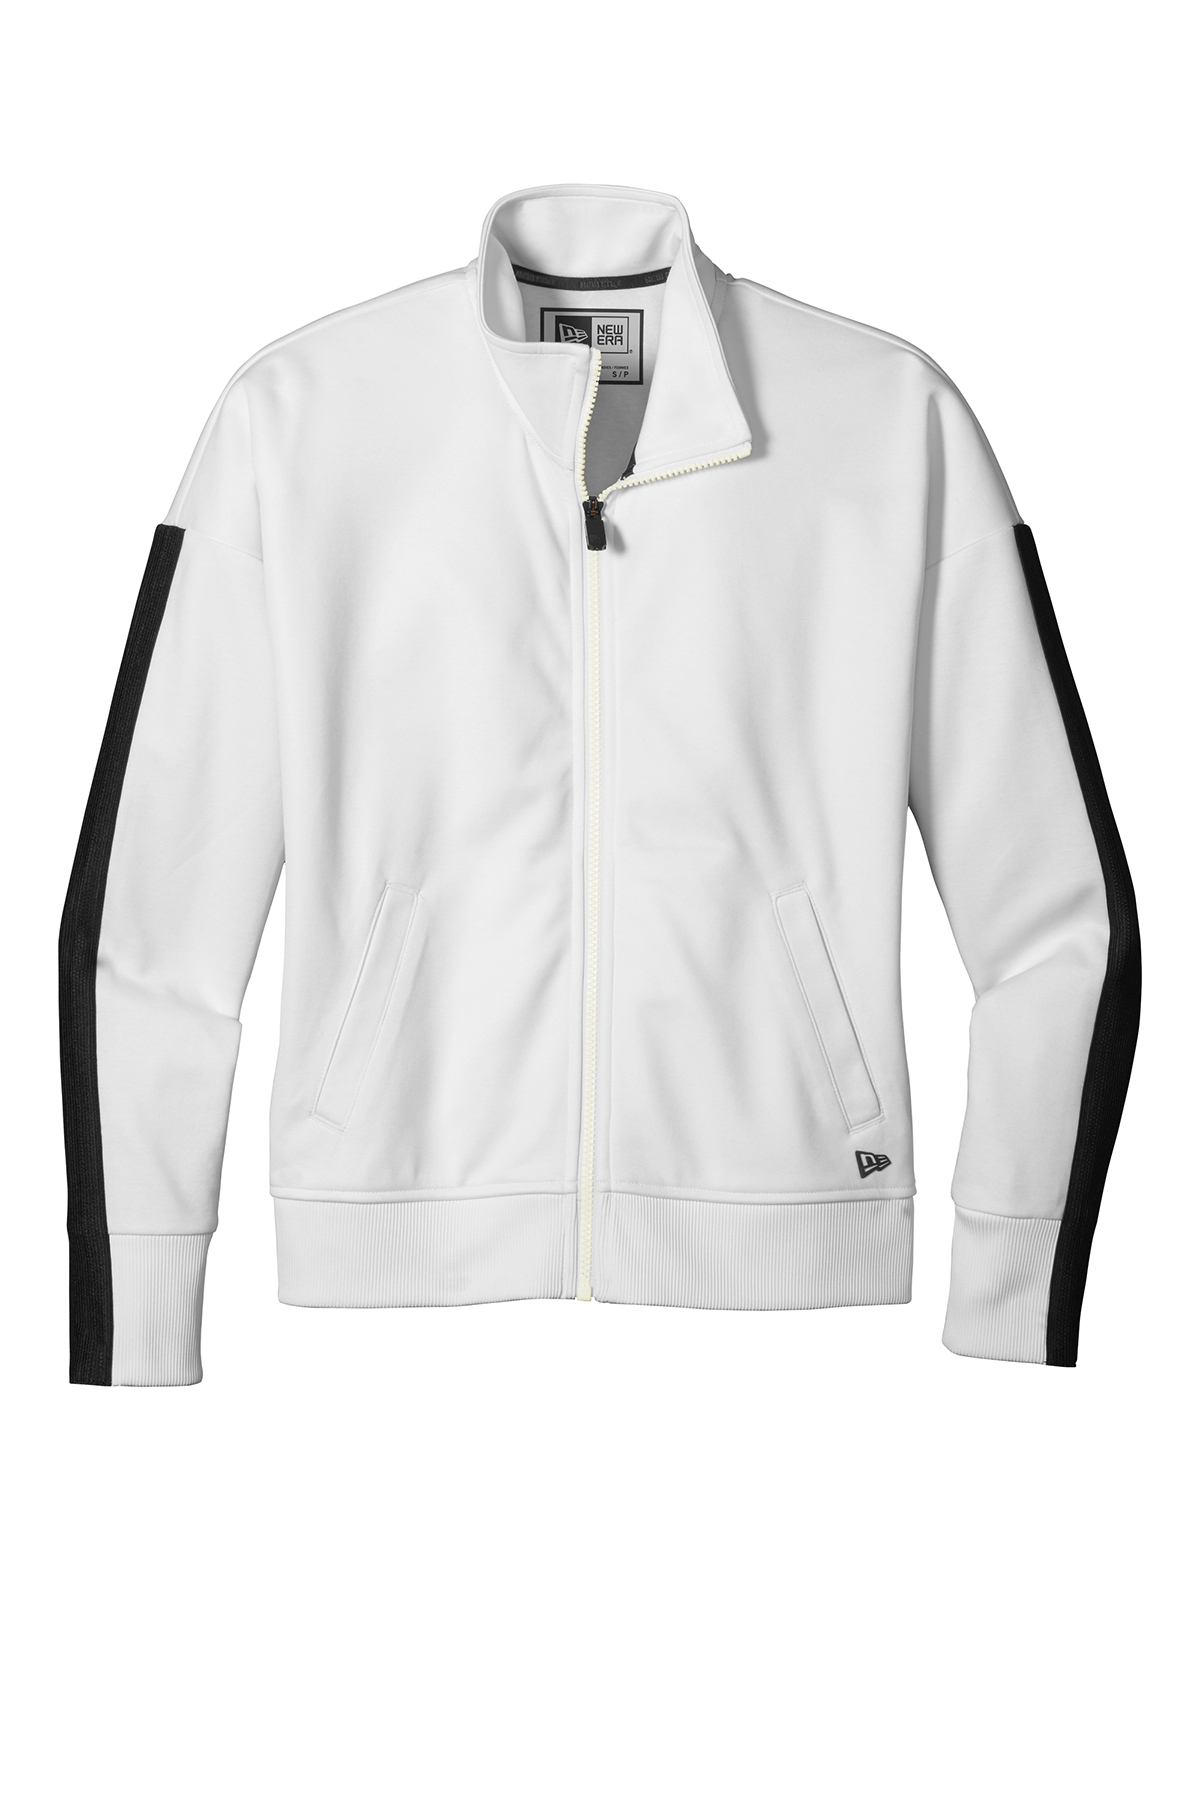 New Era ® LNEA650 - Ladies Track Jacket